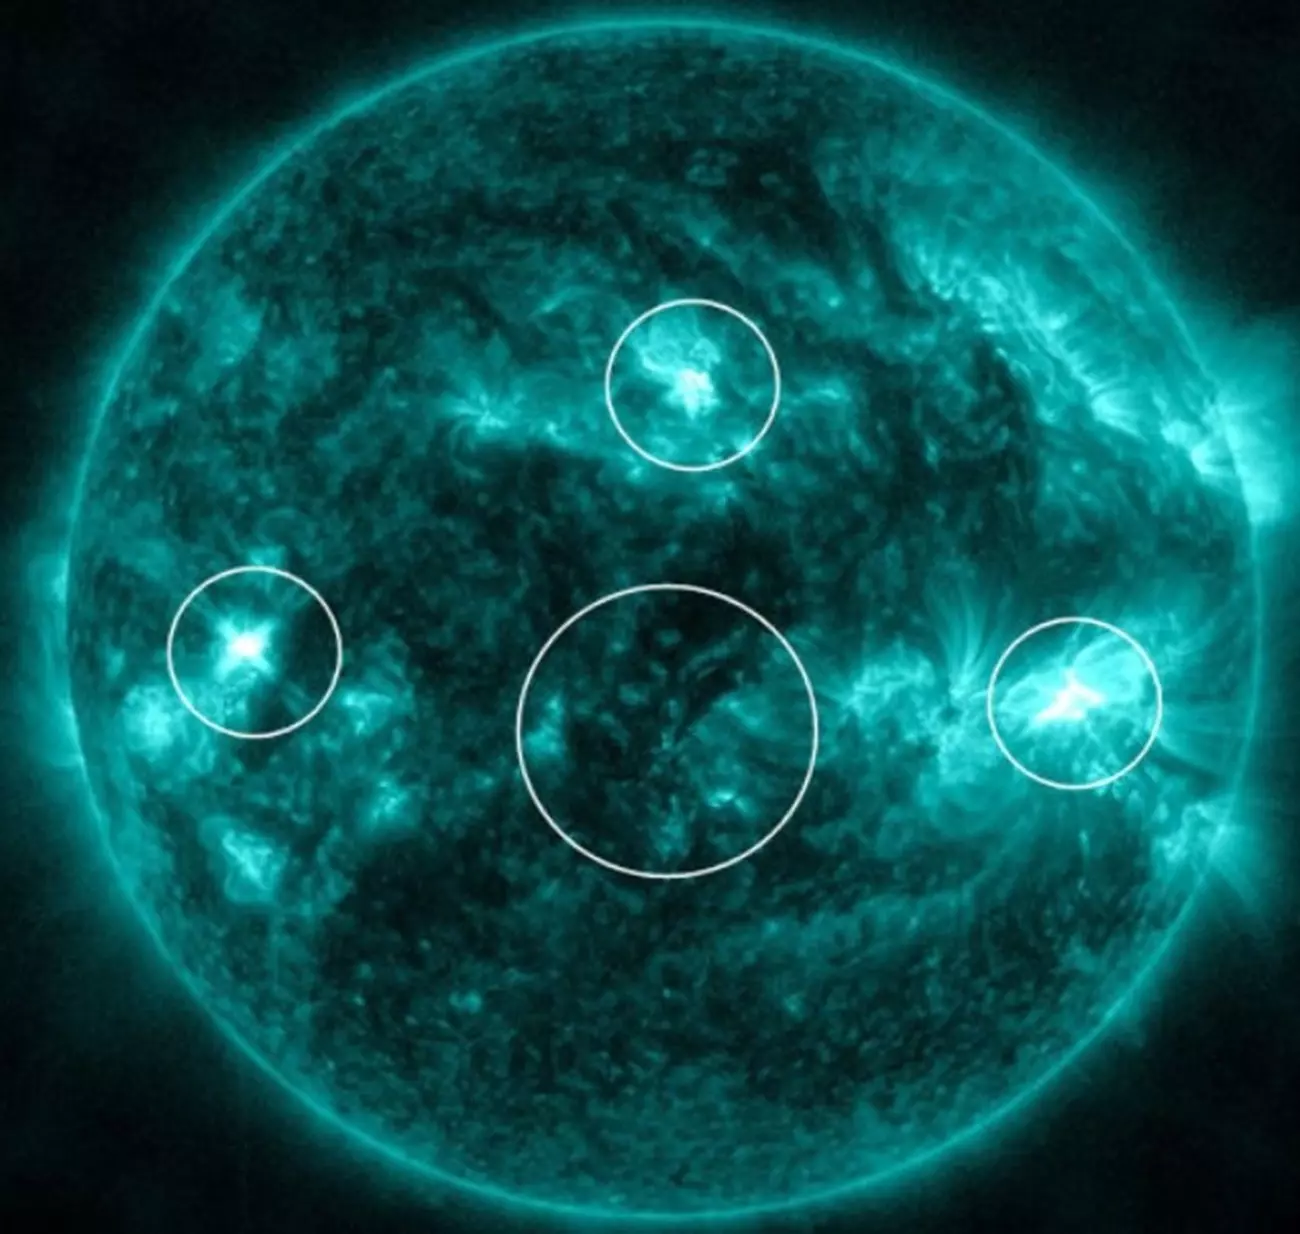 23 апреля на Солнце были зафиксированы четыре вспышки: в трех солнечных пятнах и одной магнитной нити